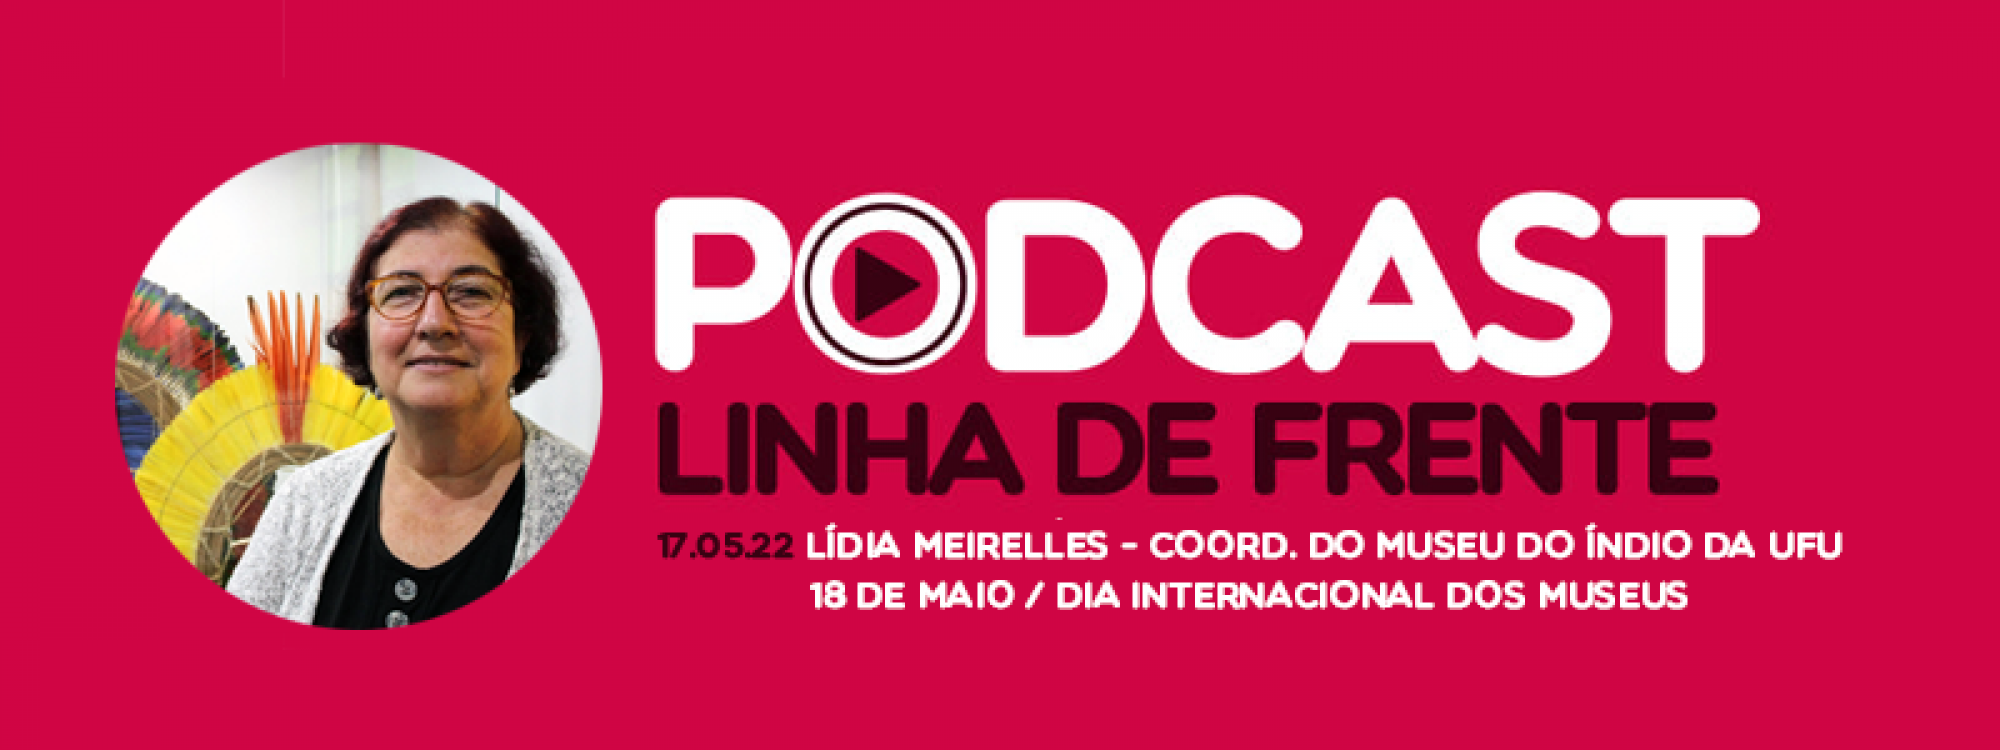 Ouça: Podcast Linha de Frente com Lídia Meirelles - 18 de maio, Dia Internacional dos Museus